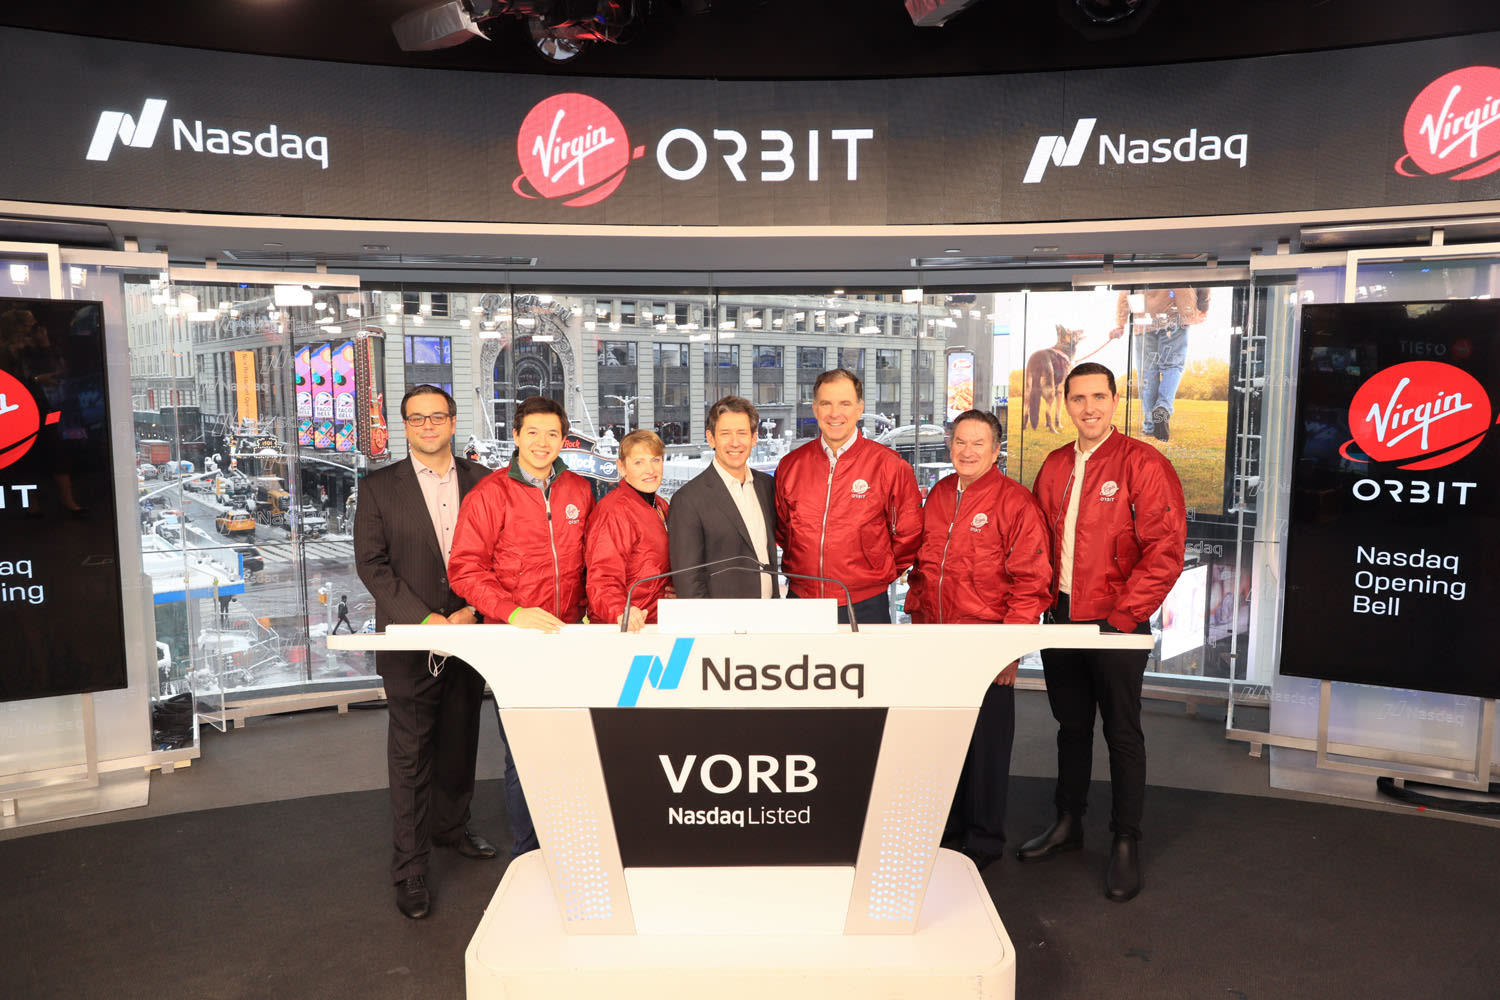 Virgin Orbit team at Nasdaq